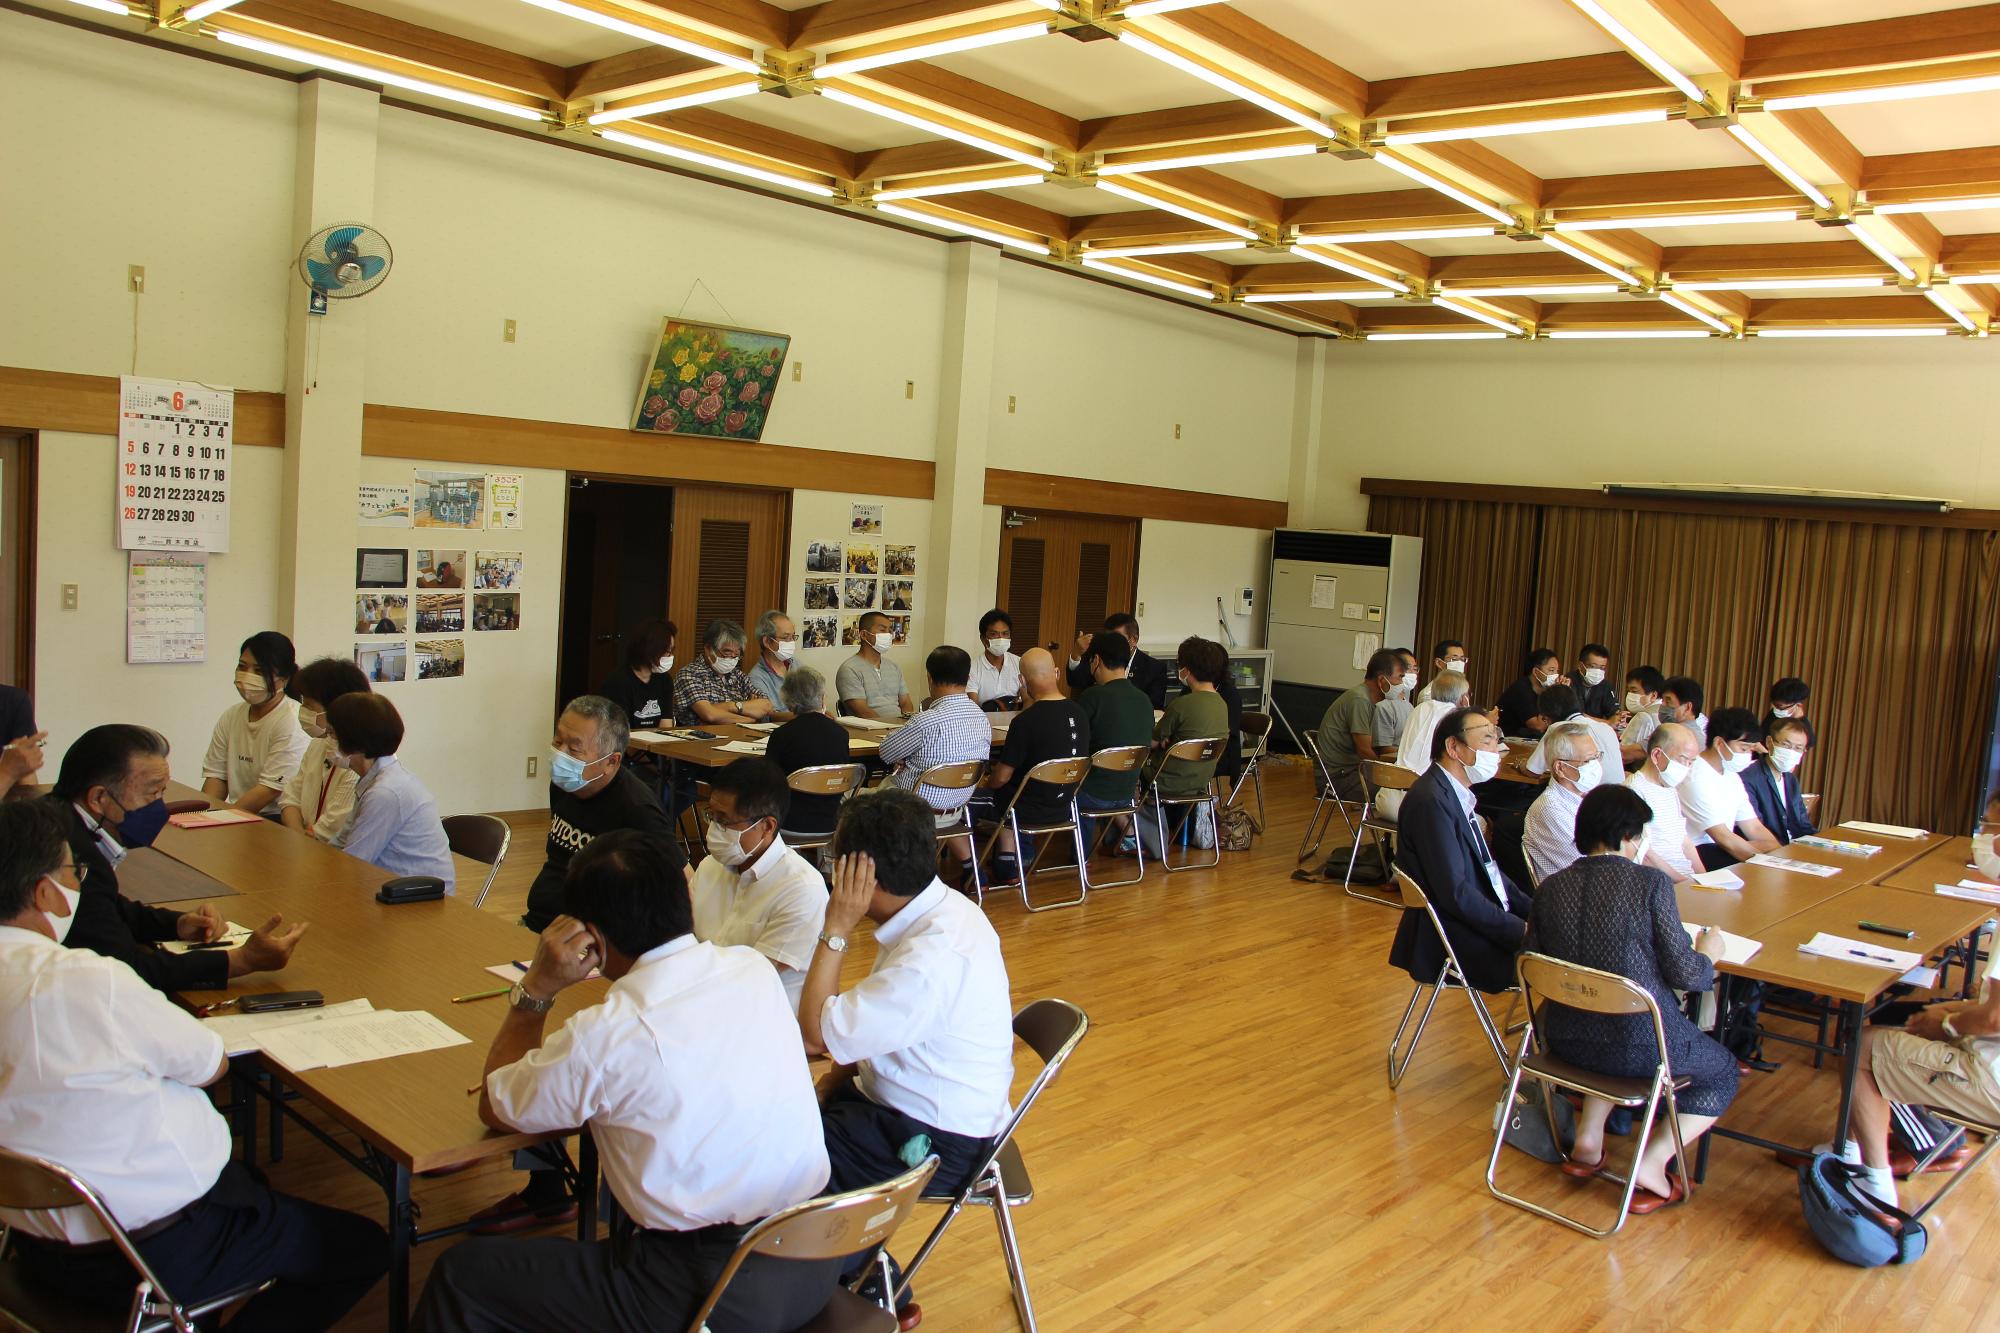 鳥取自治会のテーブルに町民と議員が報告や意見交換をしている写真